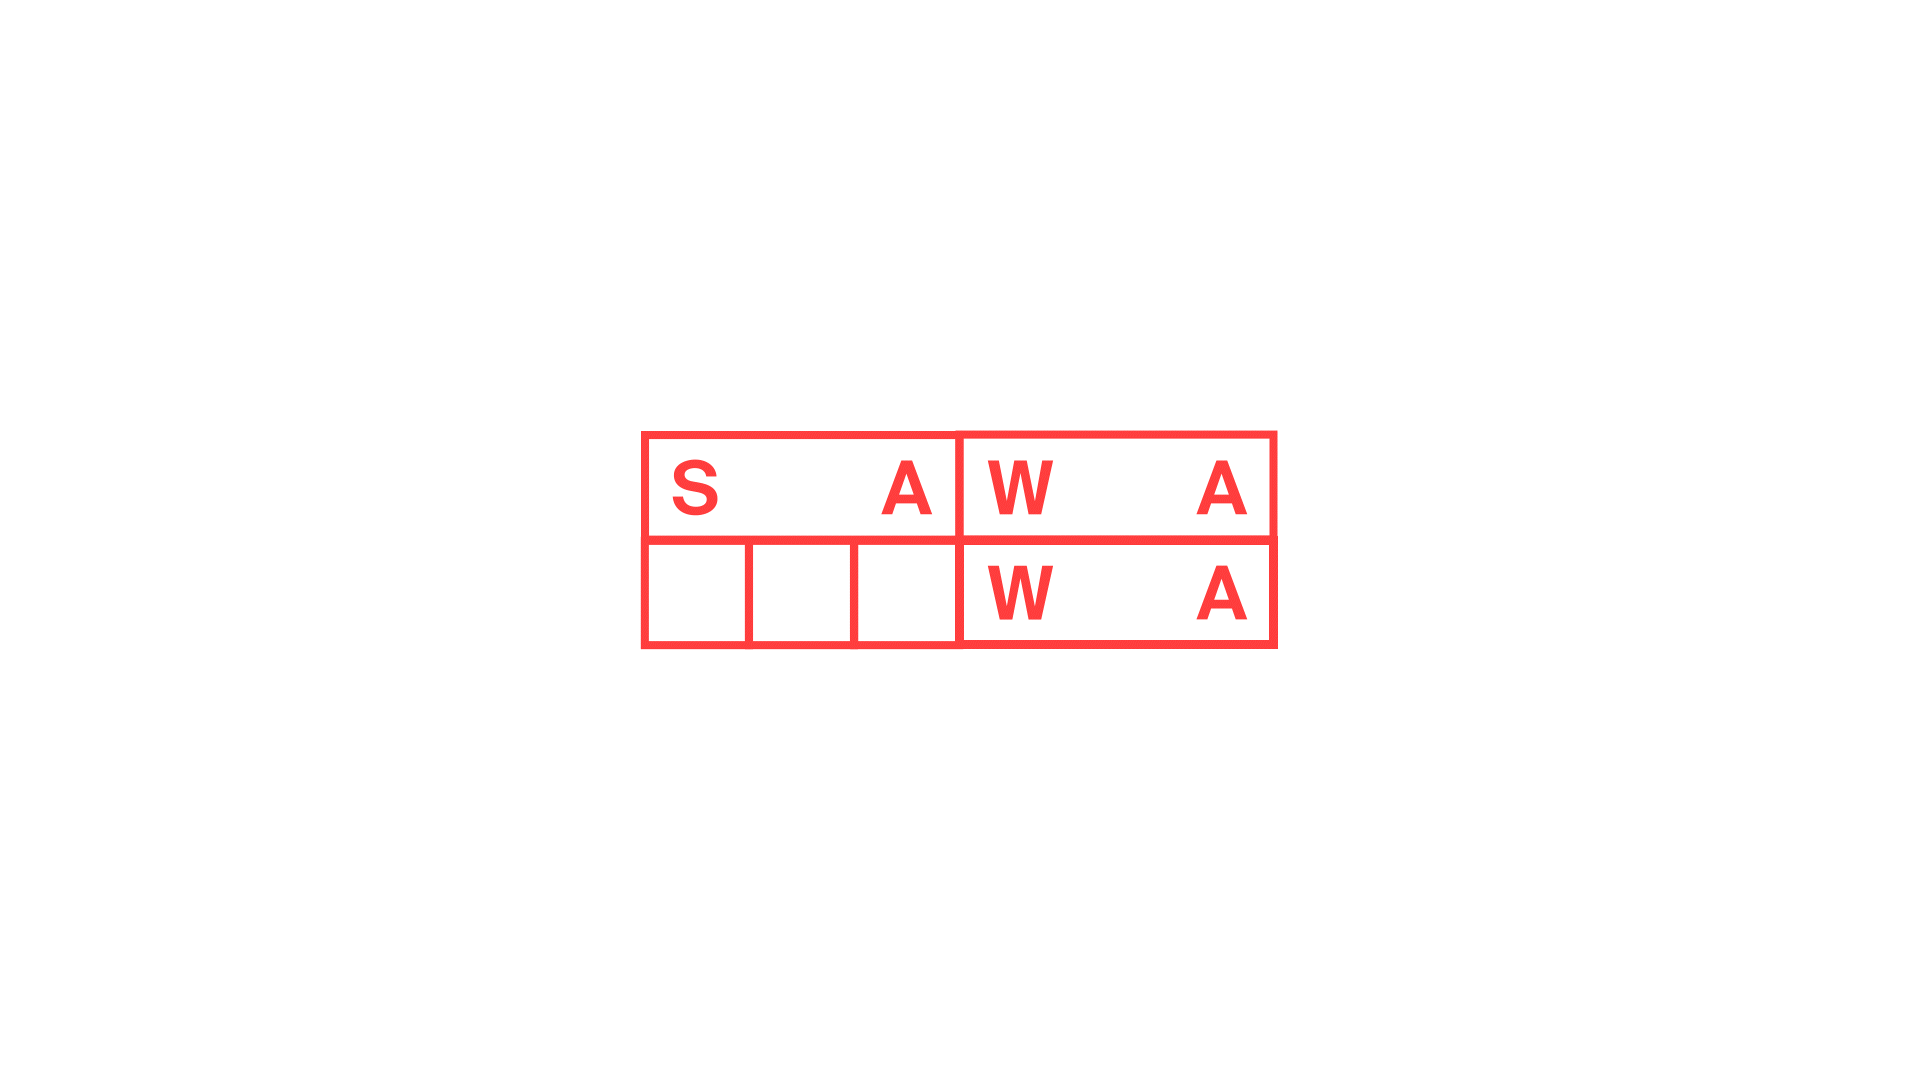 SAWAWA